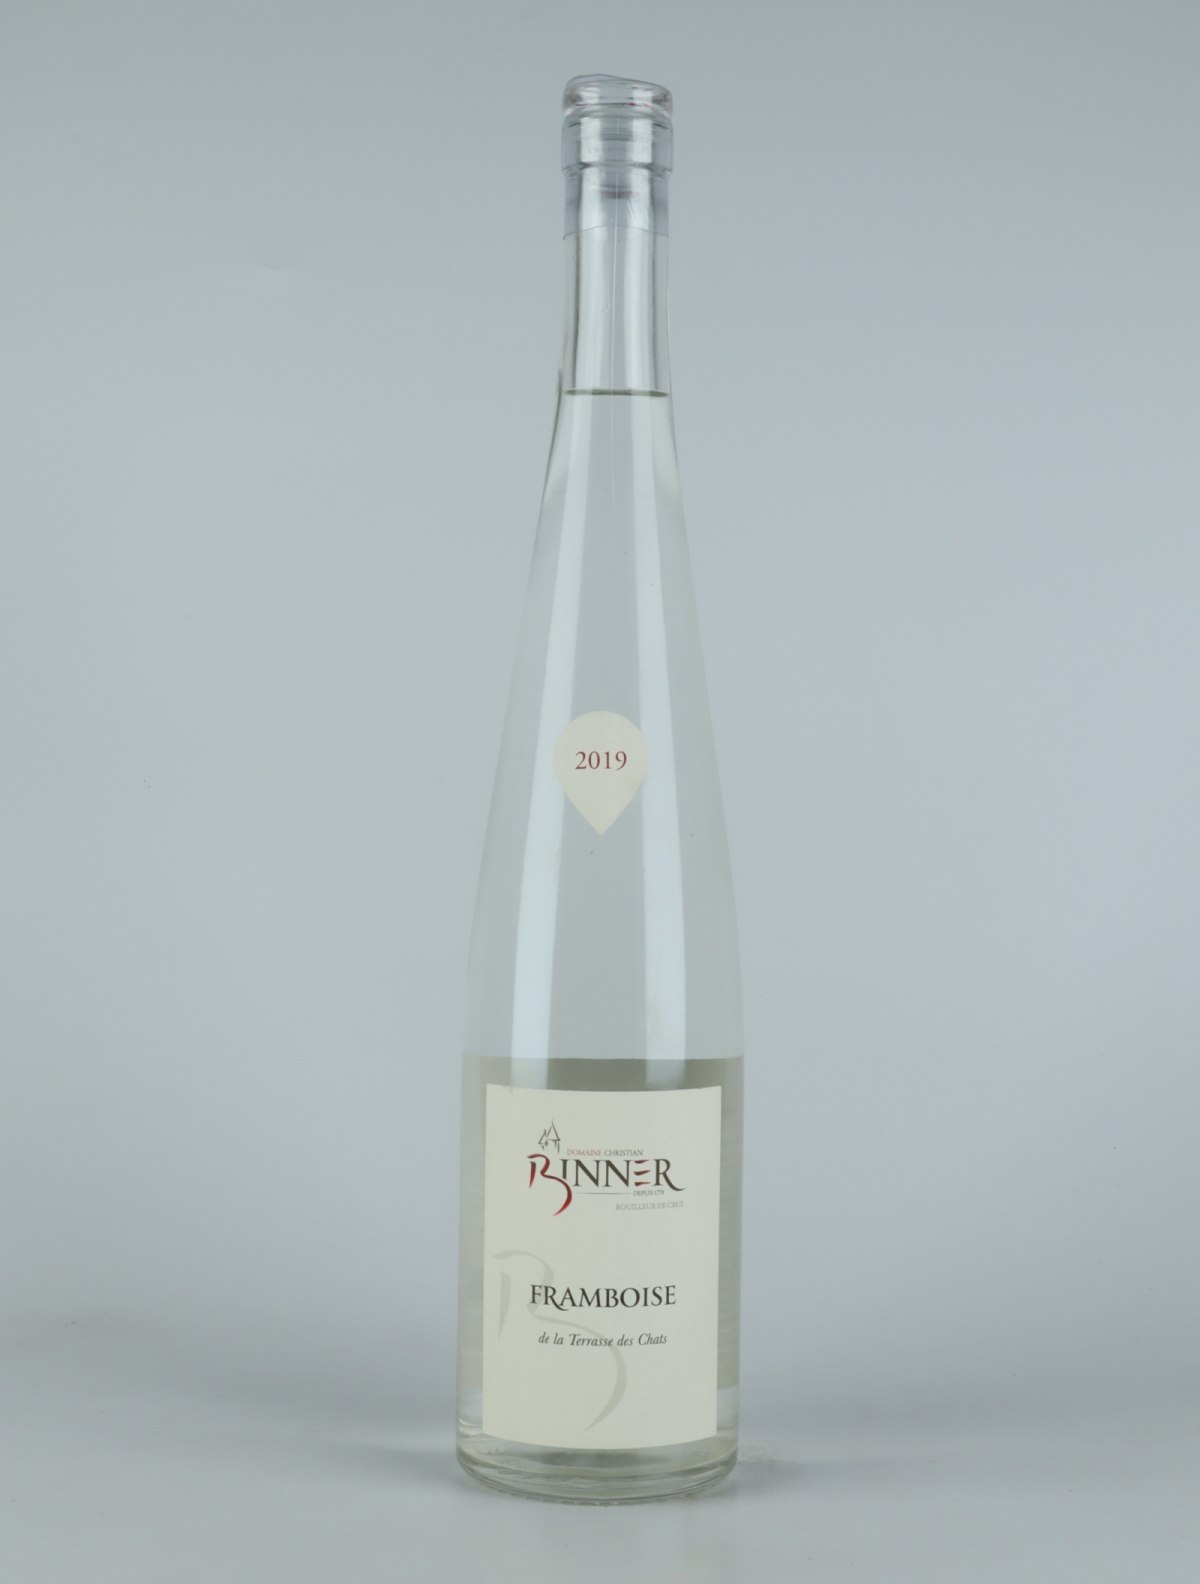 A bottle 2019 Framboise - Domaine Binner Spirits from Domaine Christian Binner, Alsace in France